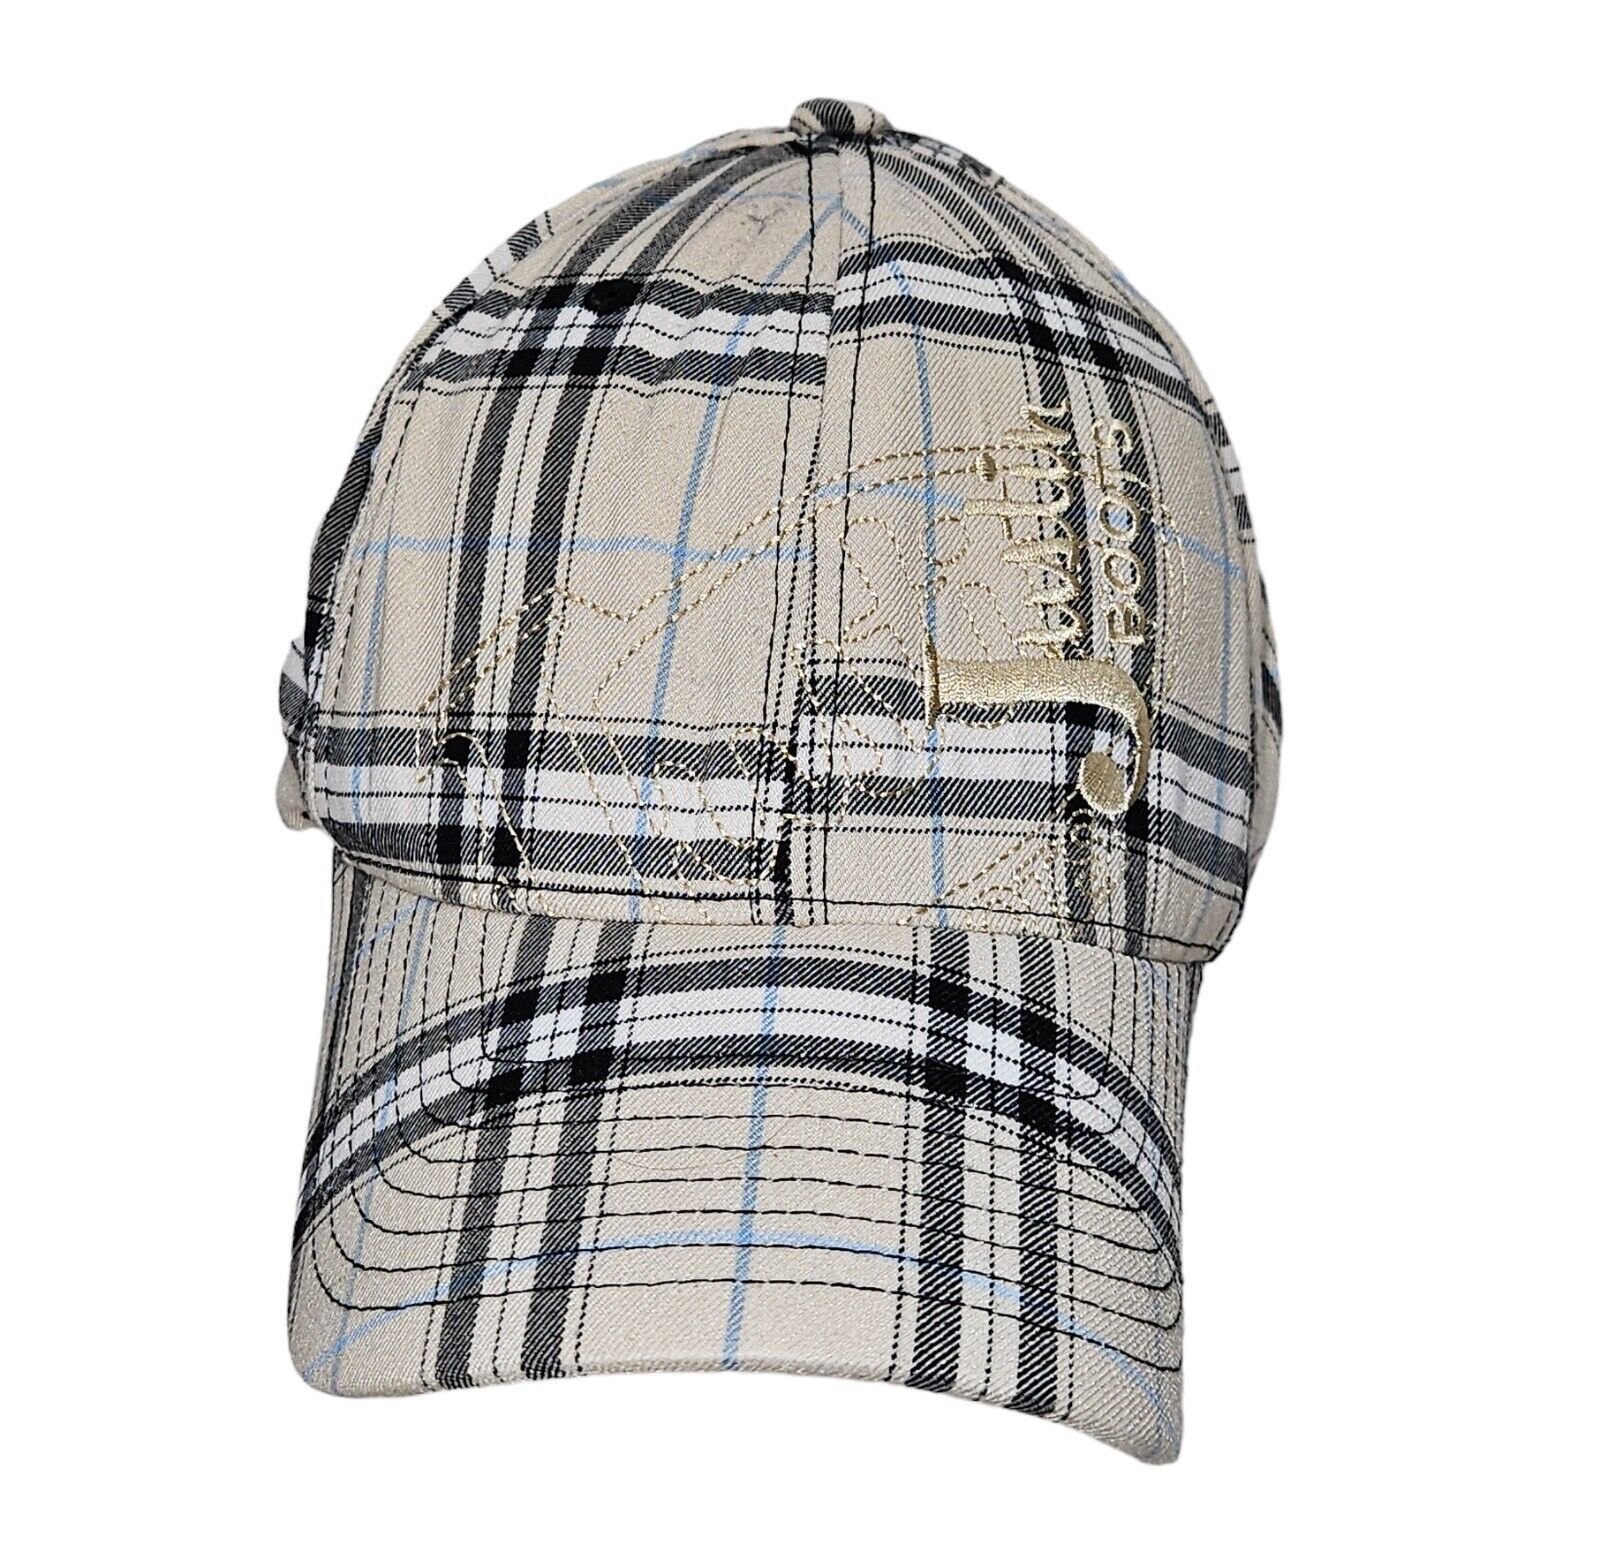 Justin Boots Hat - Tan Plaid + Pinstripe Flex Fit Cap - Adult Fitted L/XL - $10.00